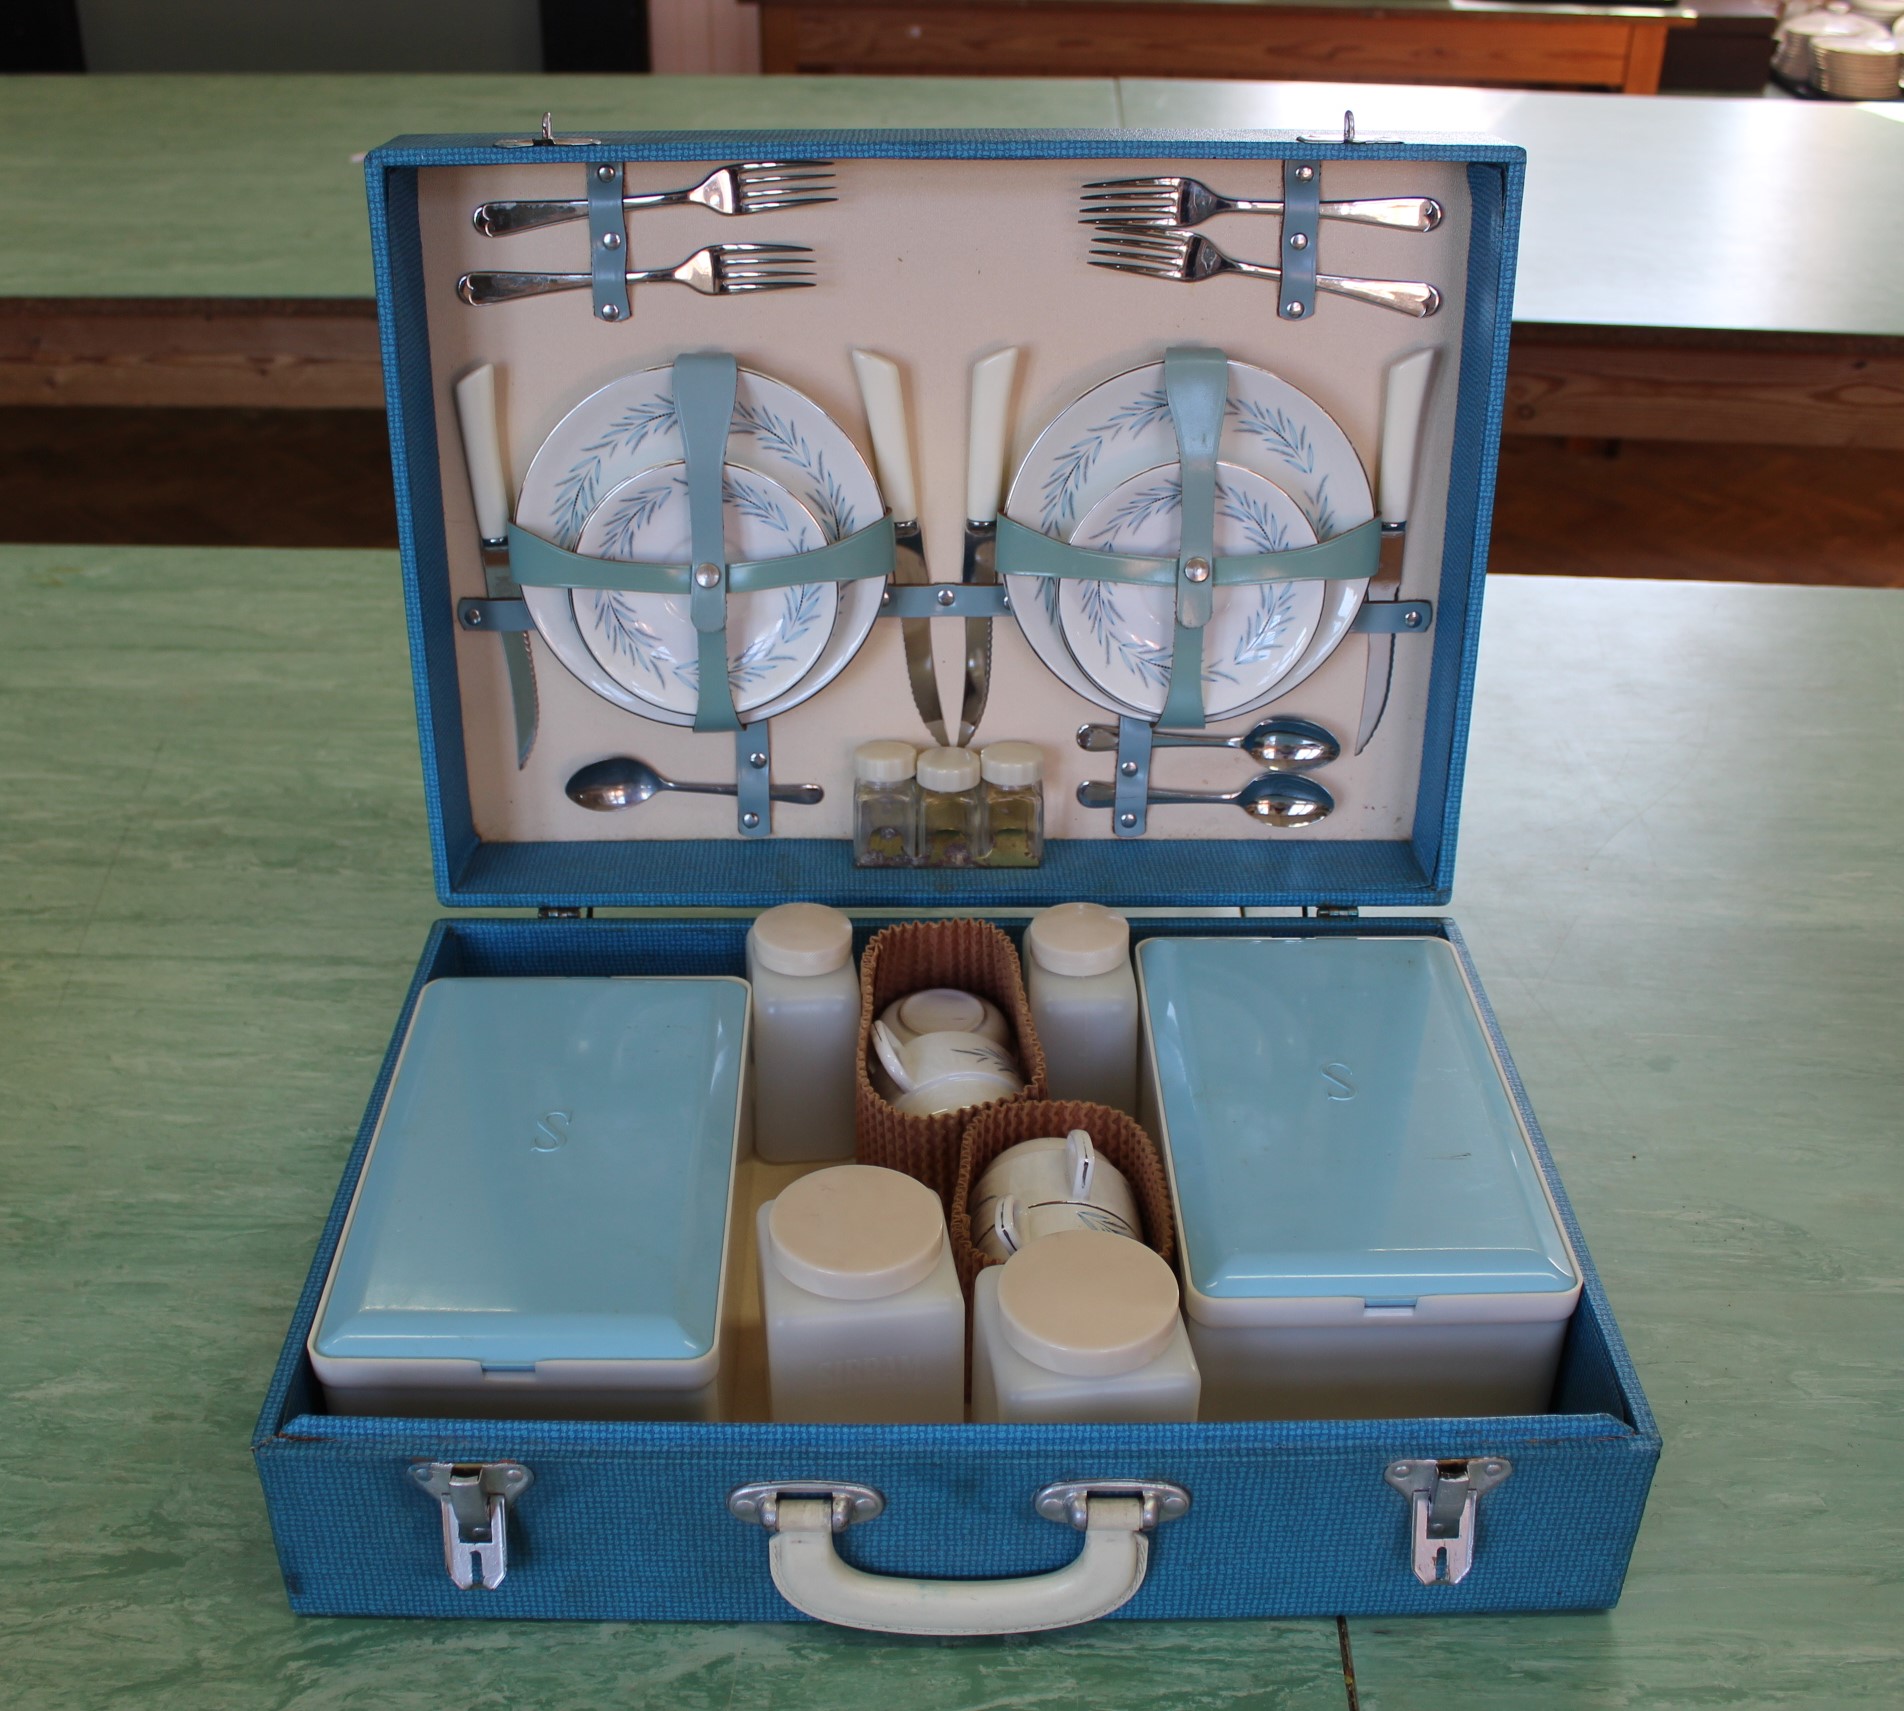 A vintage picnic set in blue hard case